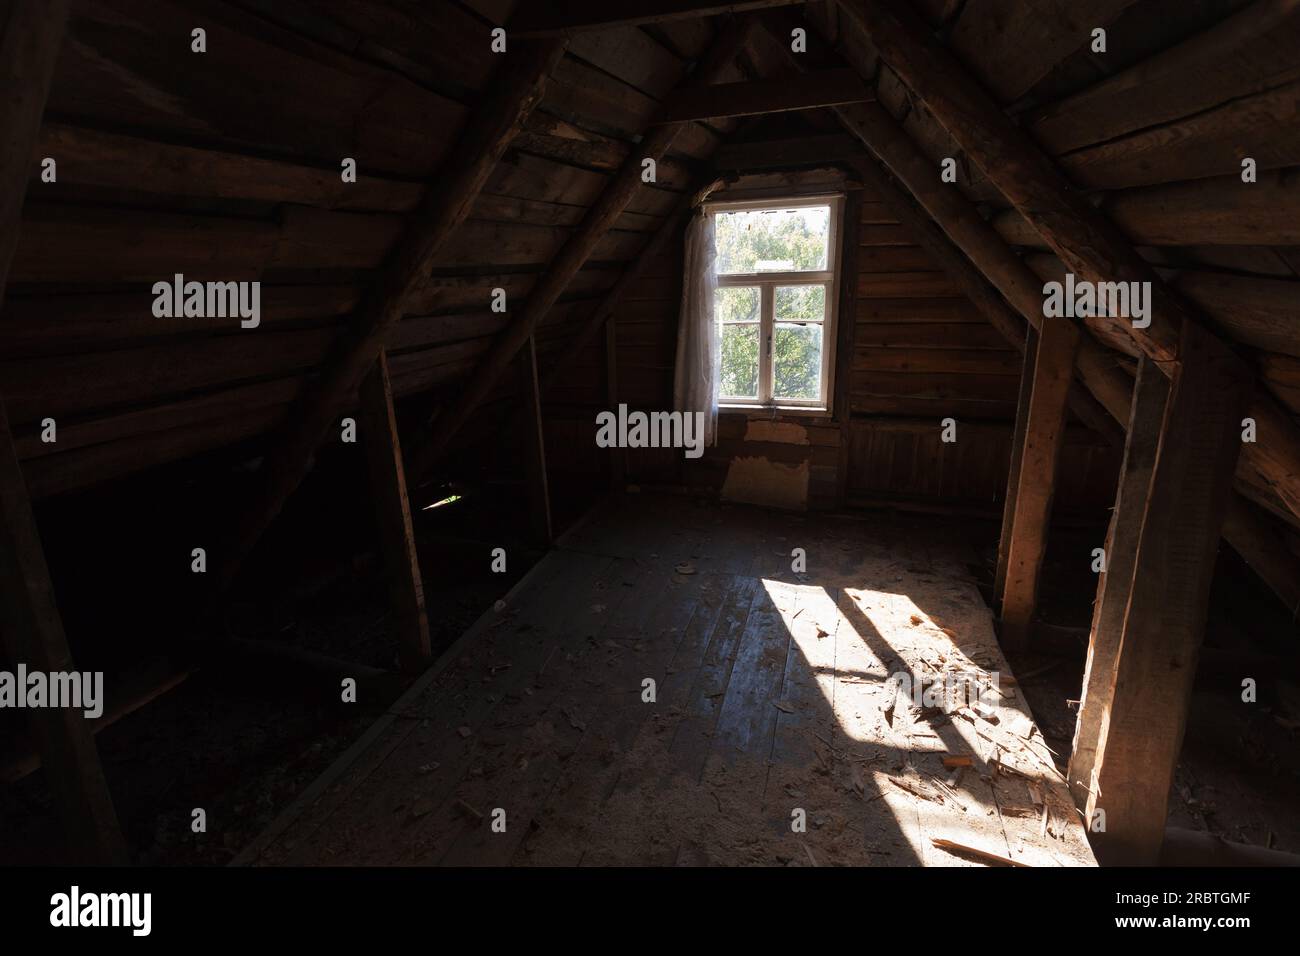 Abstraktes Grunge-Holz-Interieur, Aussicht auf einen verlassenen Dachboden mit Sonnenlicht durch ein leeres Fenster Stockfoto